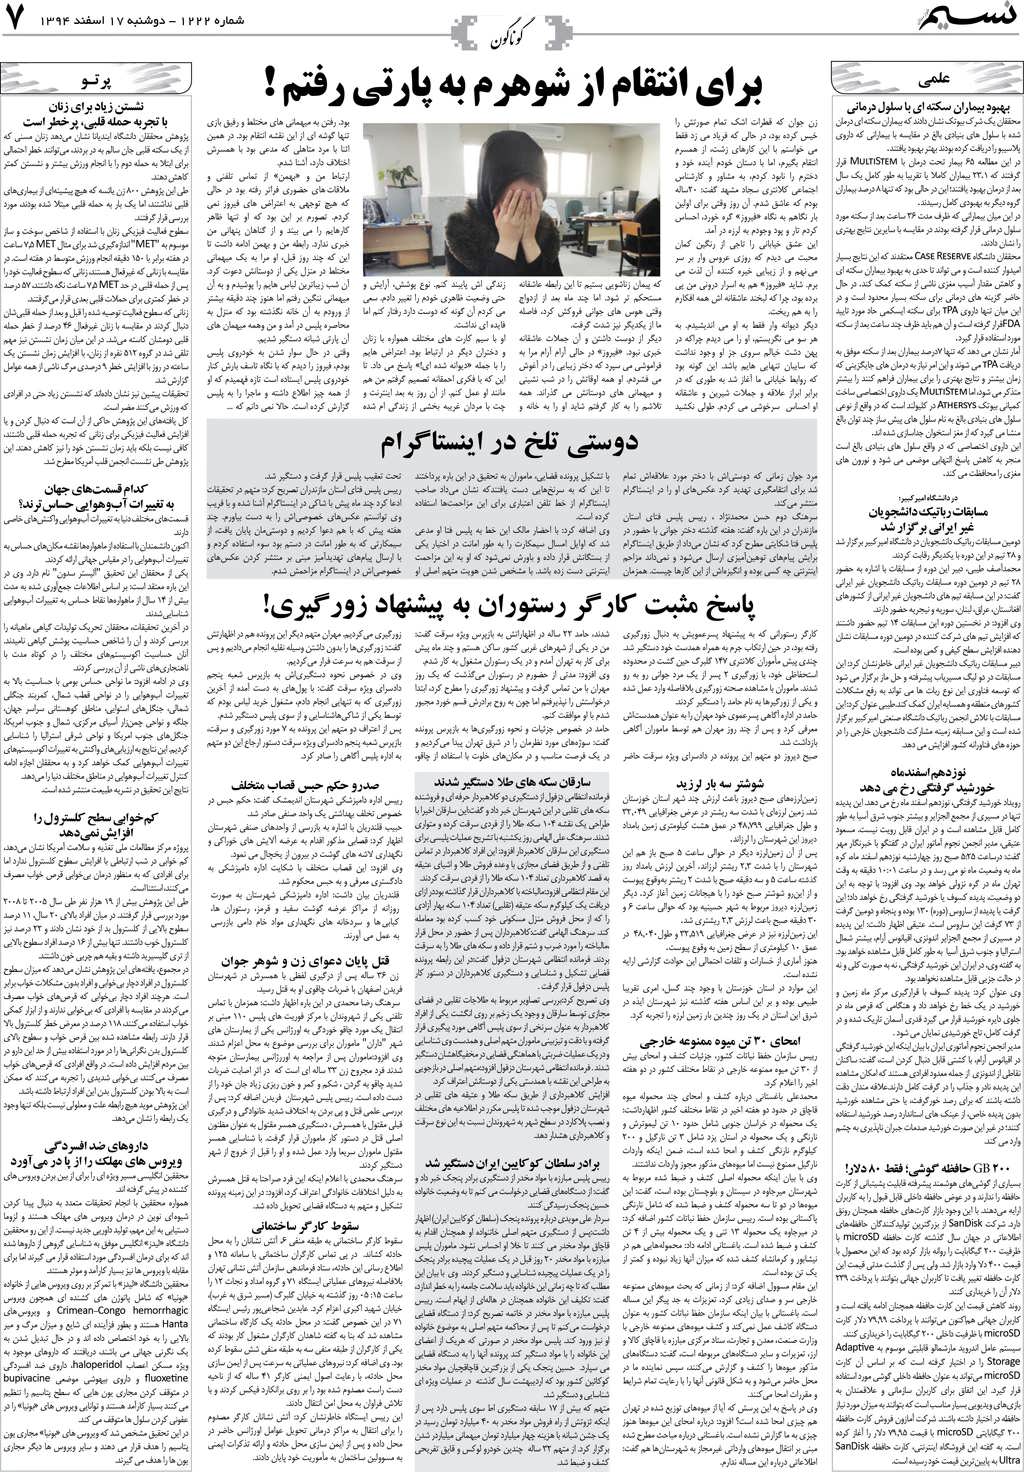 صفحه گوناگون روزنامه نسیم شماره 1222